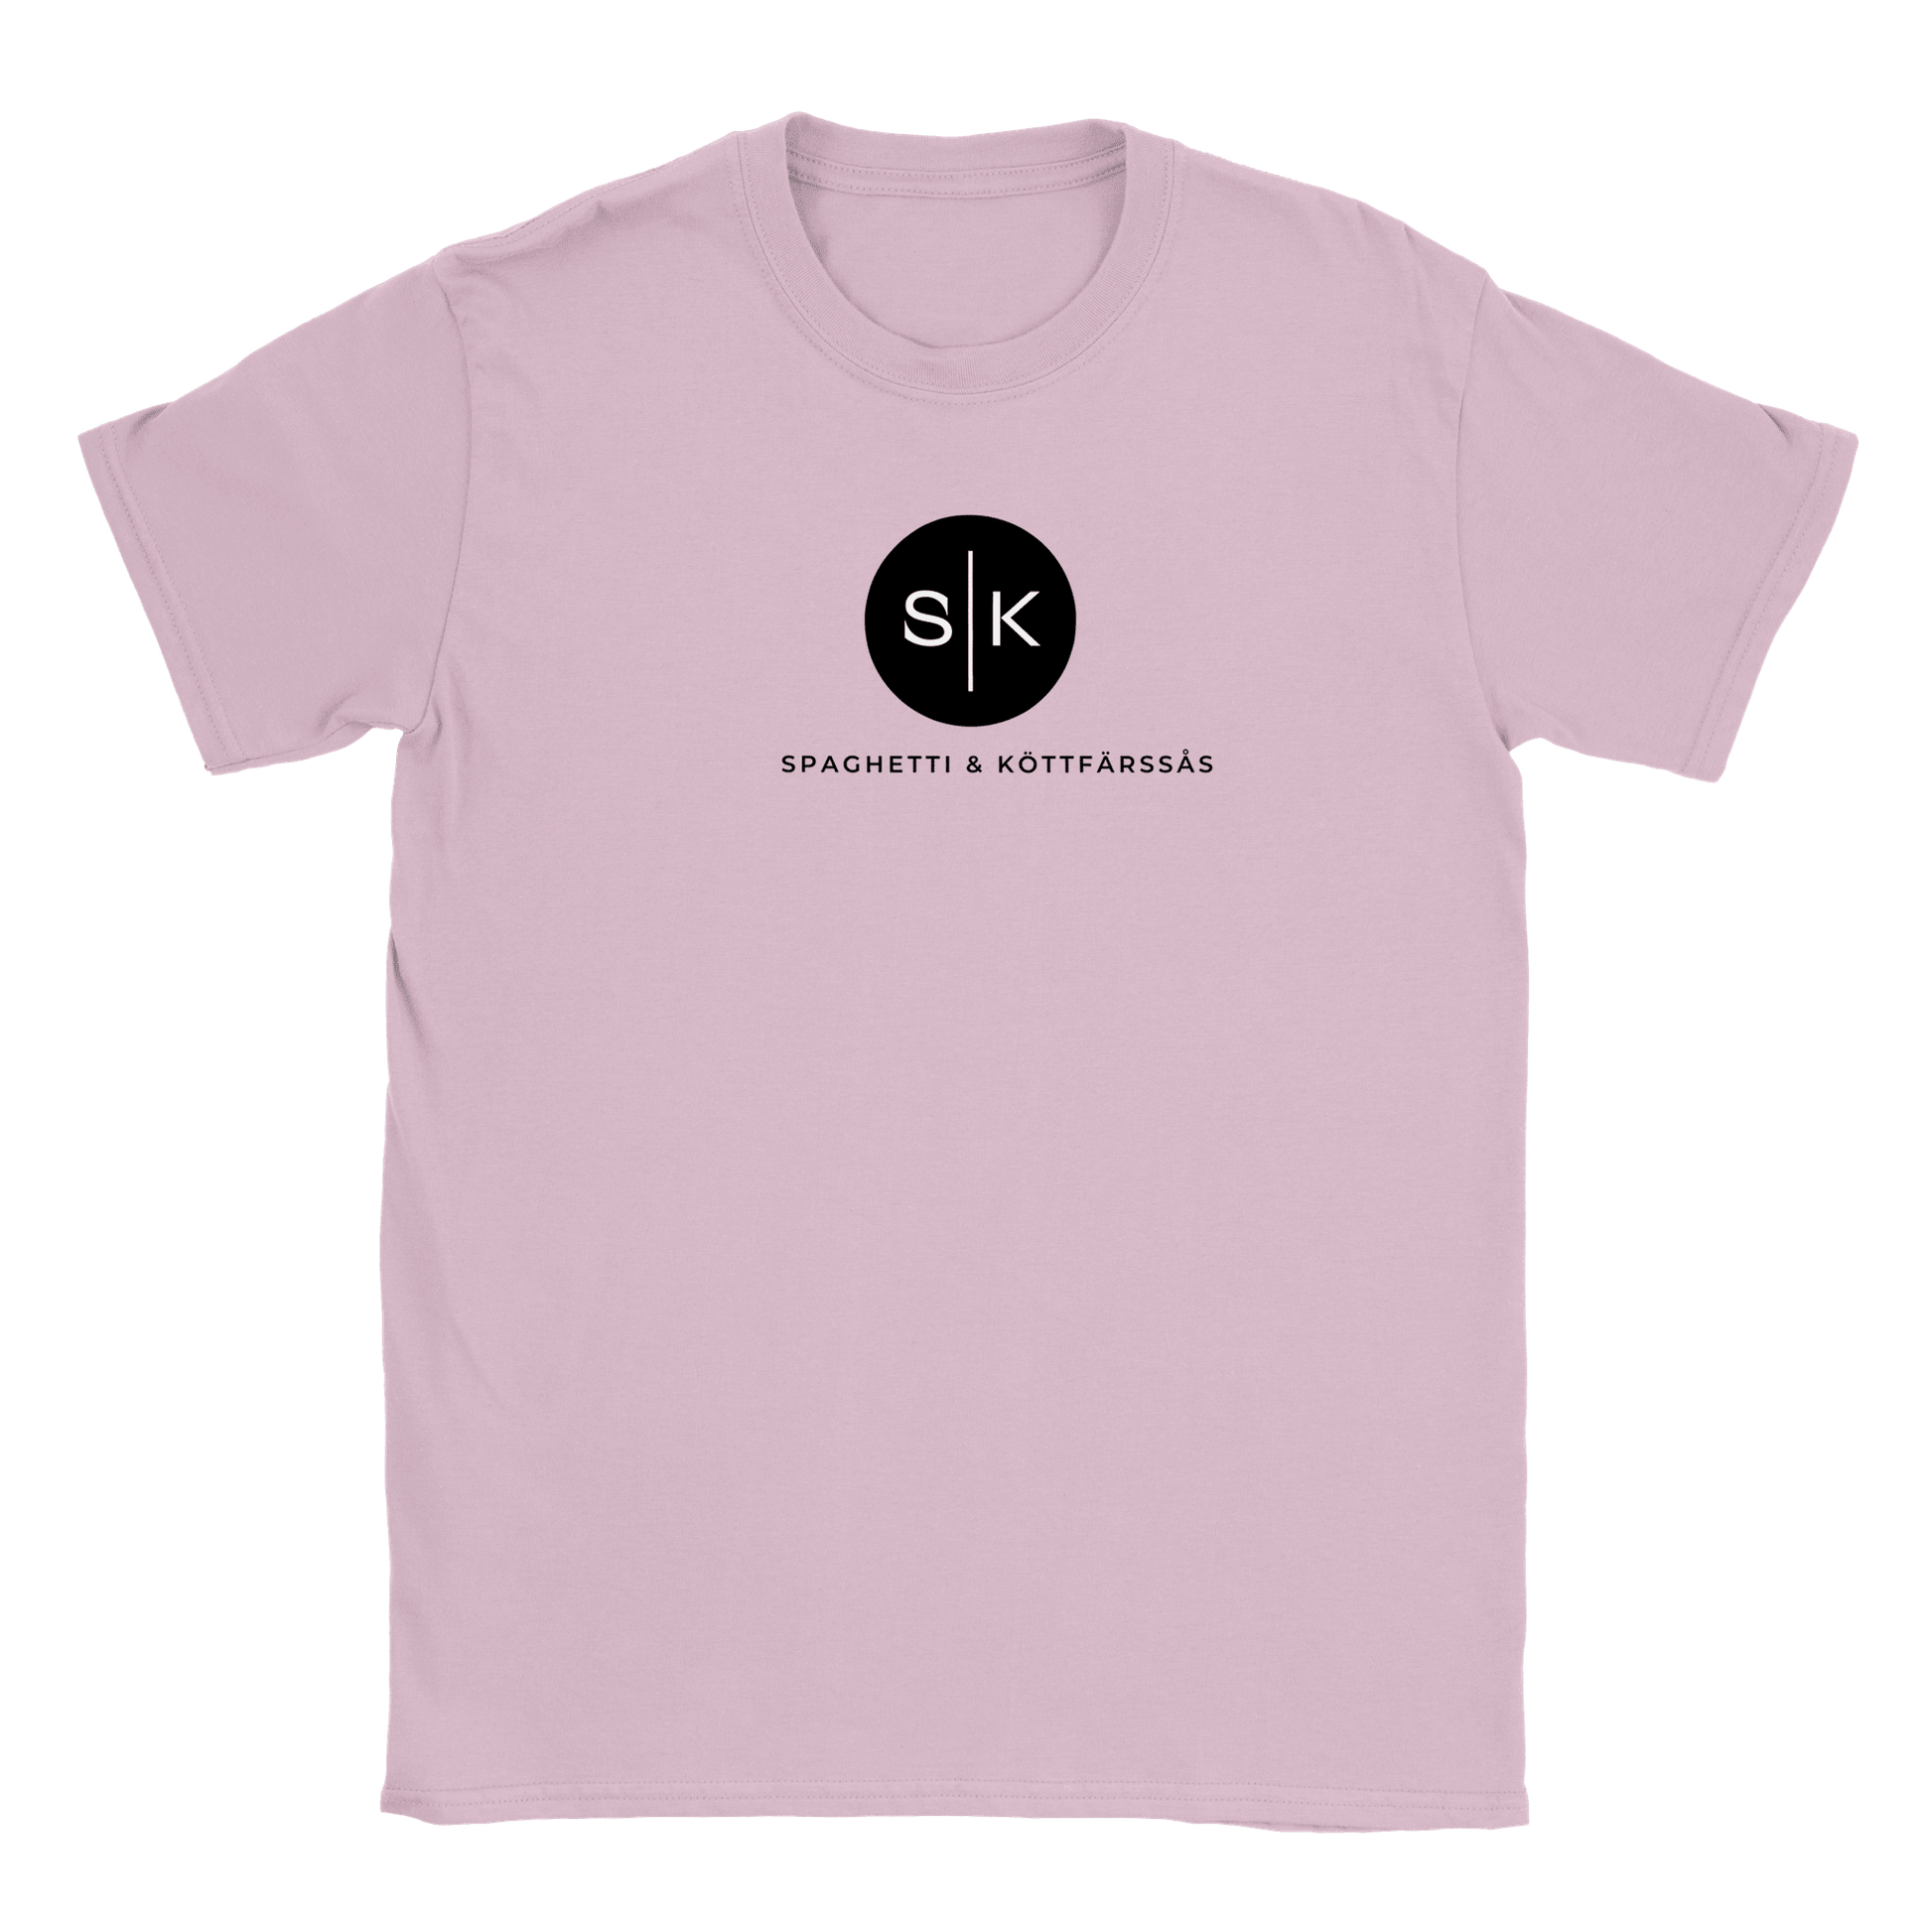 Spaghetti och Köttfärssås - T-shirt för barn Rosa